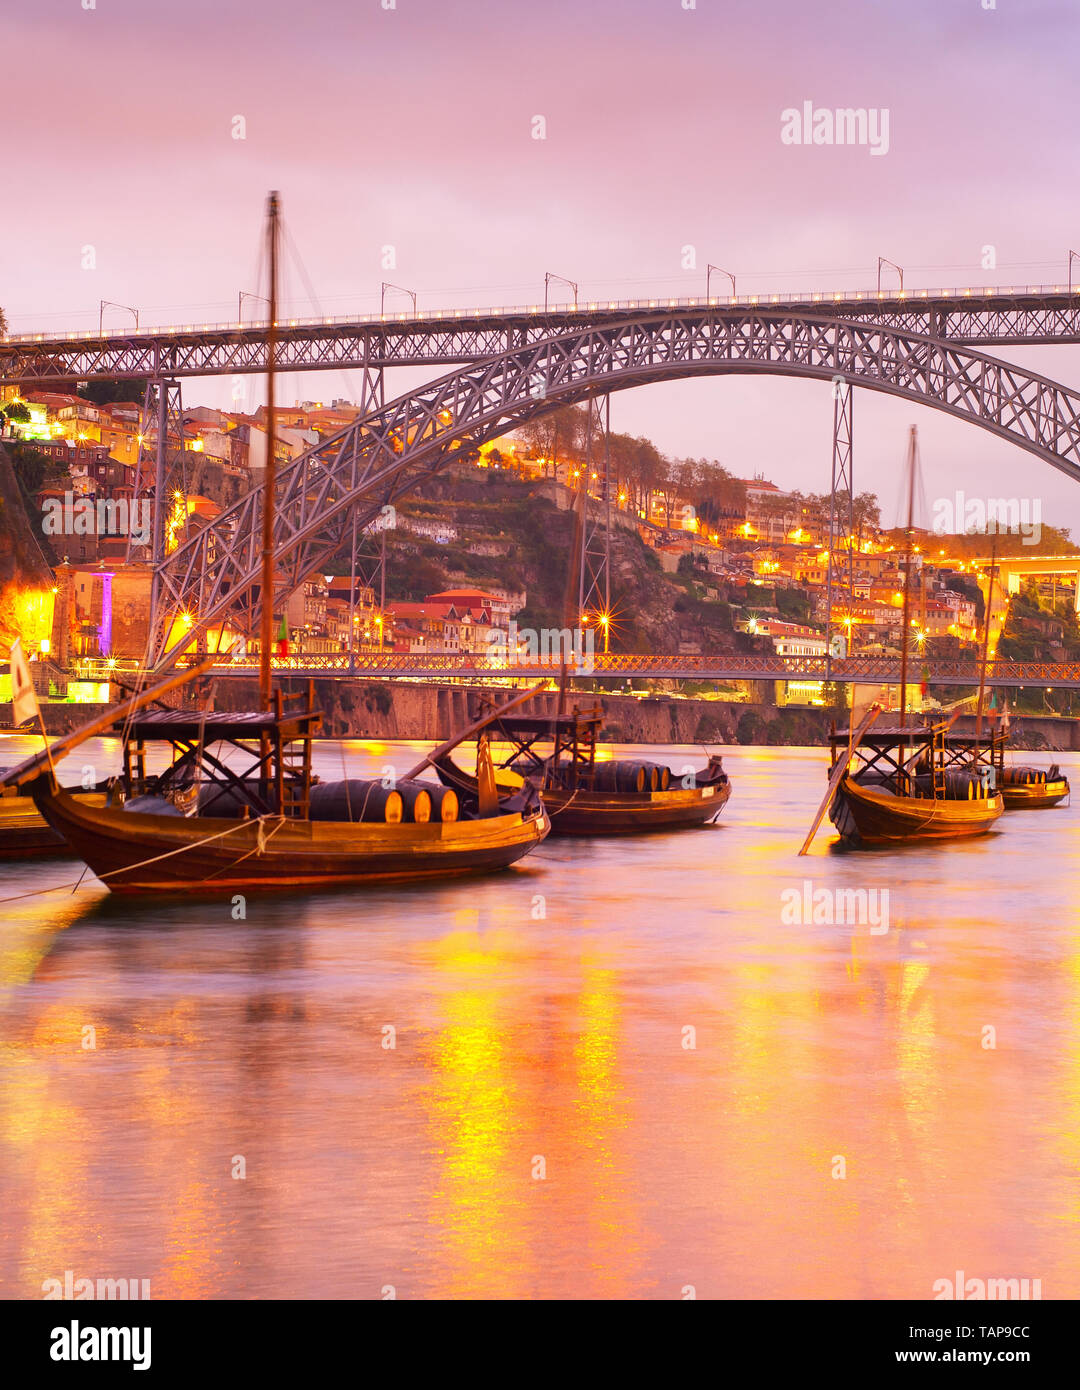 Scenic tramonto sul fiume Douro con vino tradizionale barche, illuminato Porto skyline e Dom Luis i bridge in background, Portogallo Foto Stock